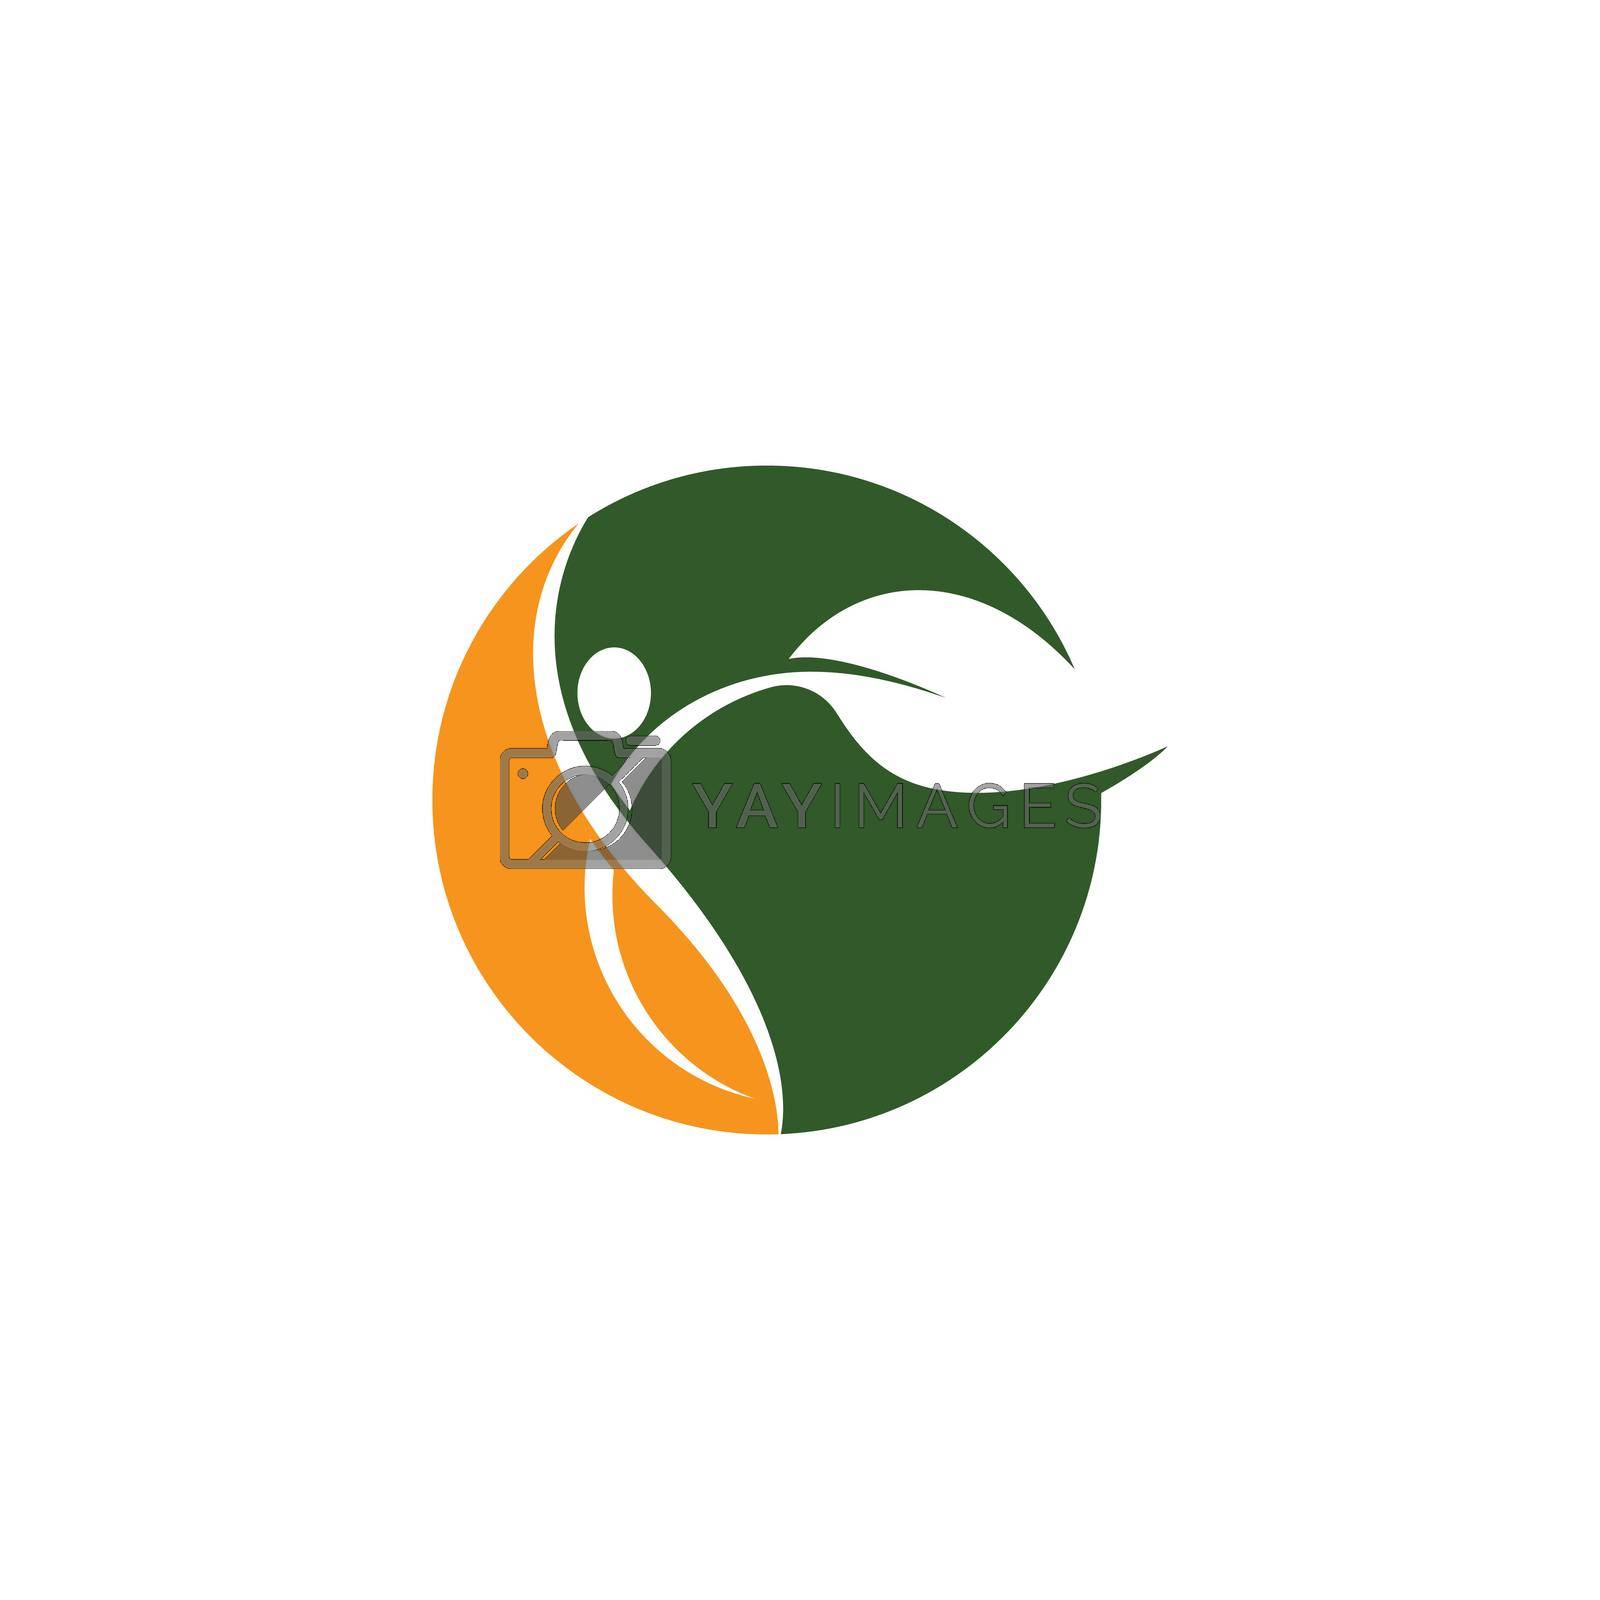 Wellnes logo template vector icon